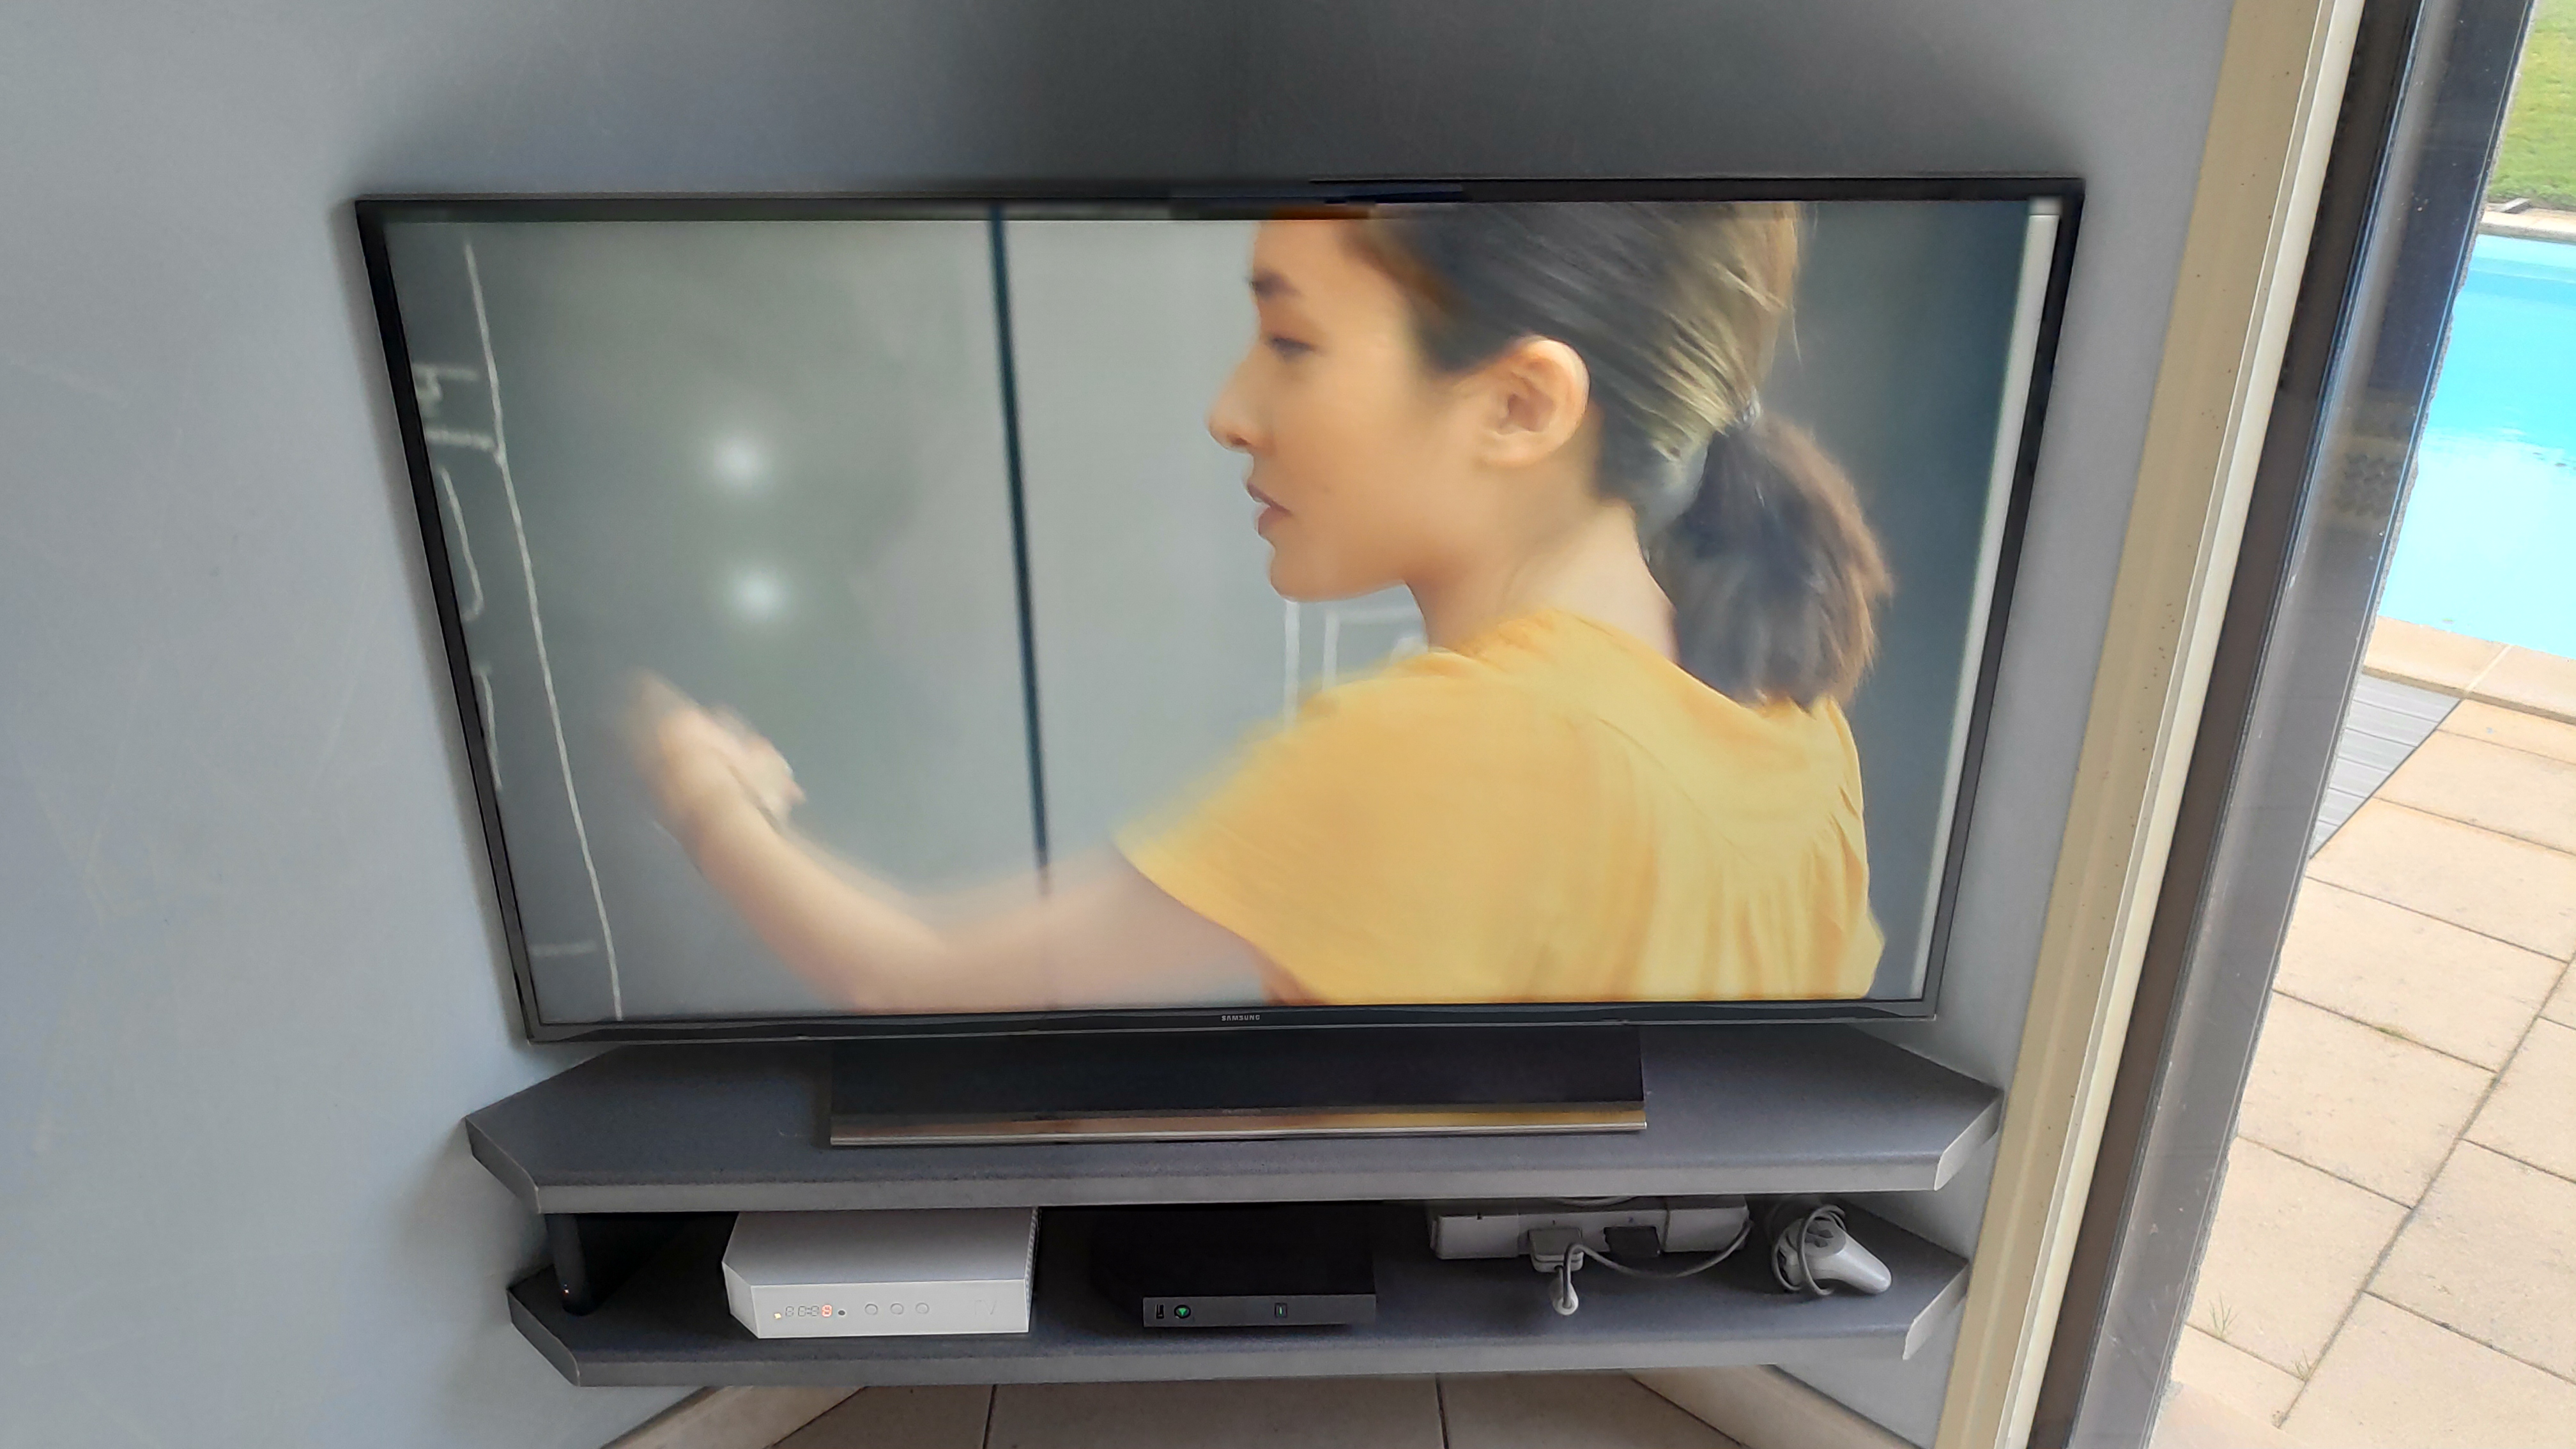 Probleme de taches blanches sur TV UE55HU6900 4K UHD - Samsung Community